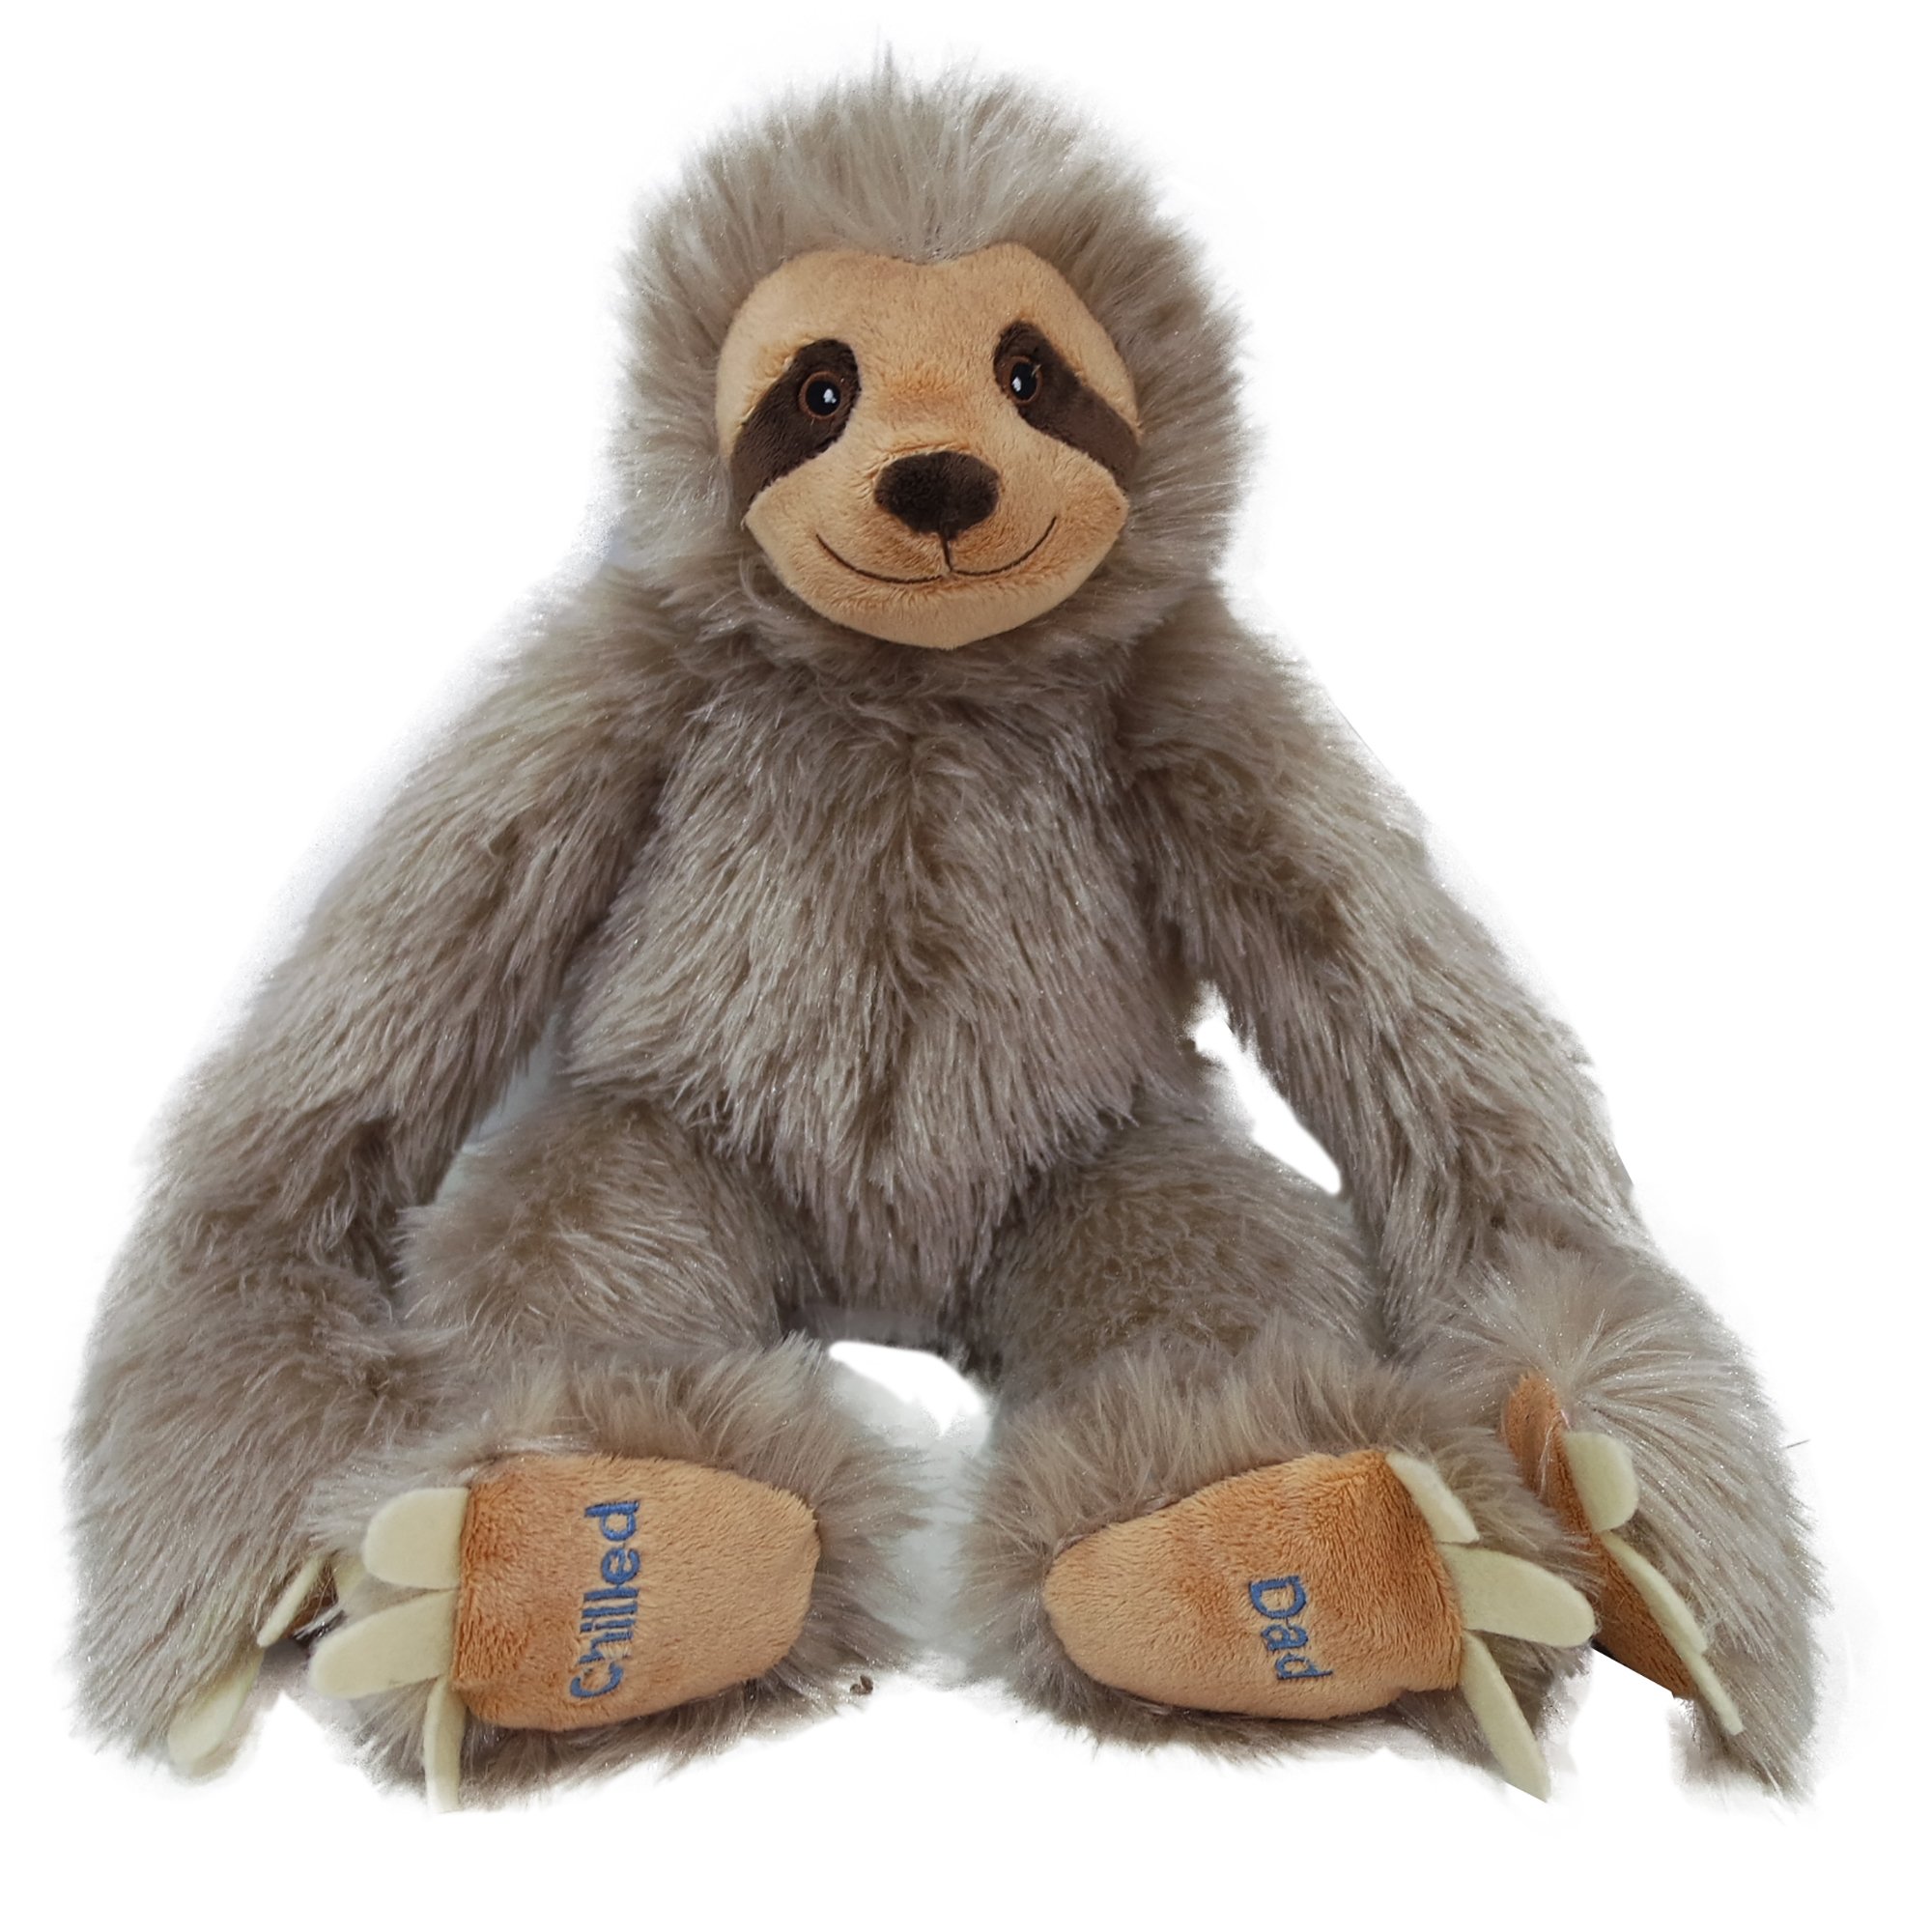 asda sloth teddy